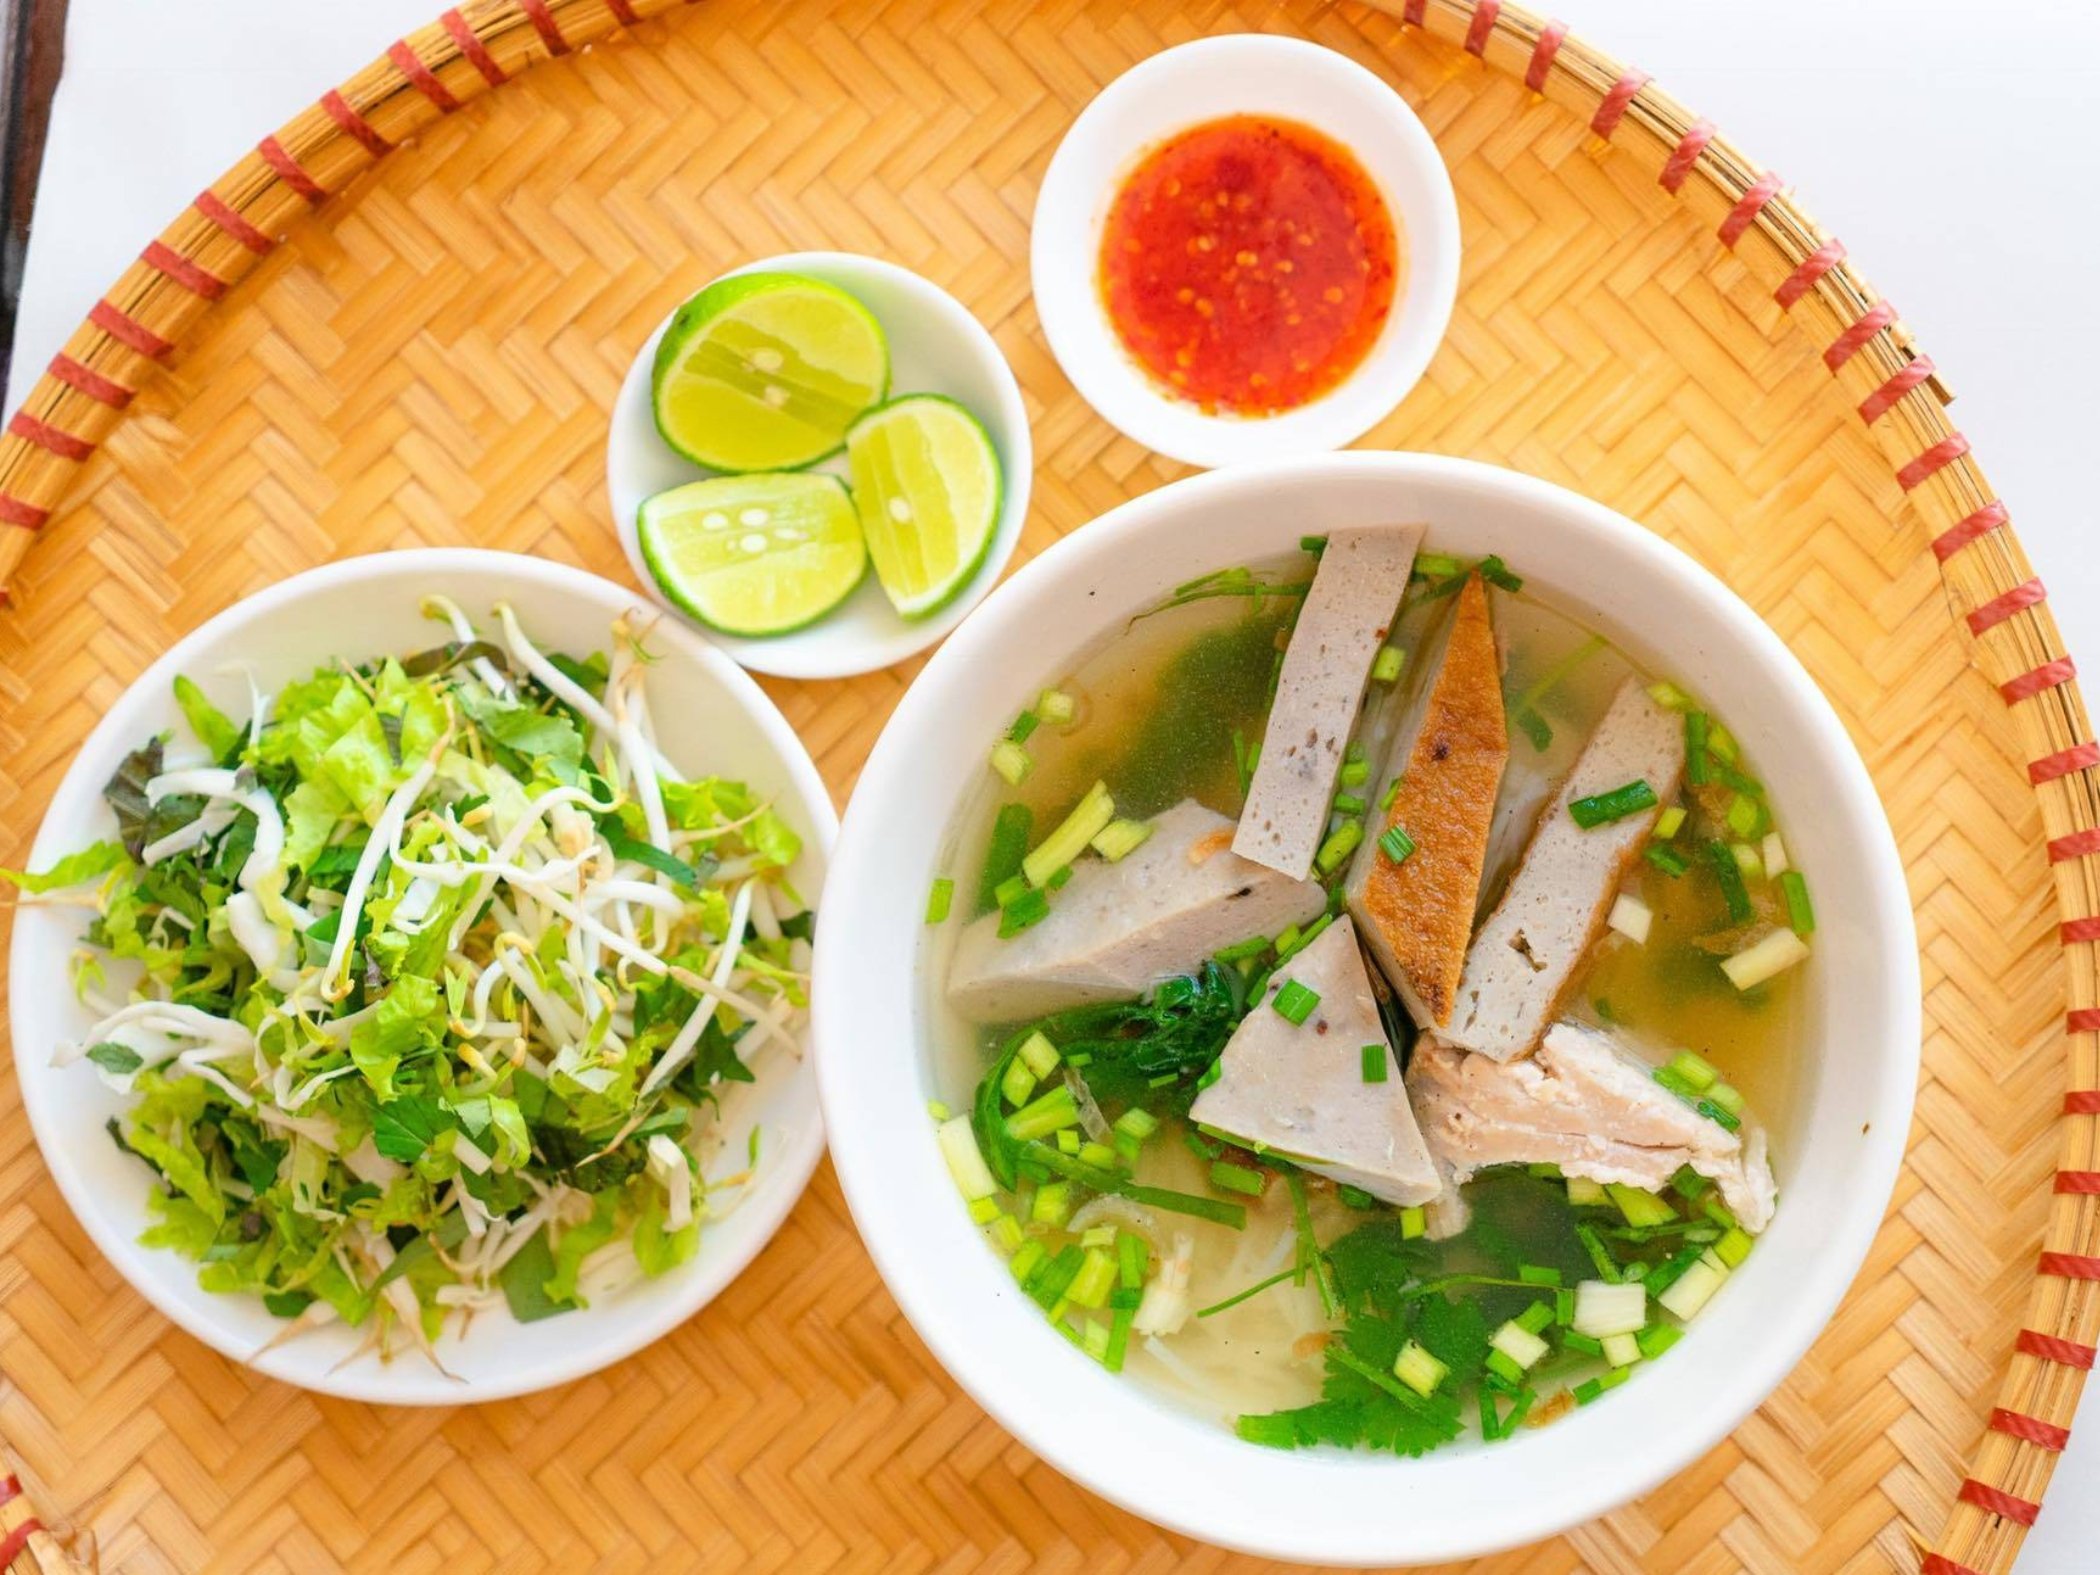 Bún cá dầm Nha Trang là món ăn đặc sản vùng biển Khánh Hòa (Ảnh: Sưu tầm)